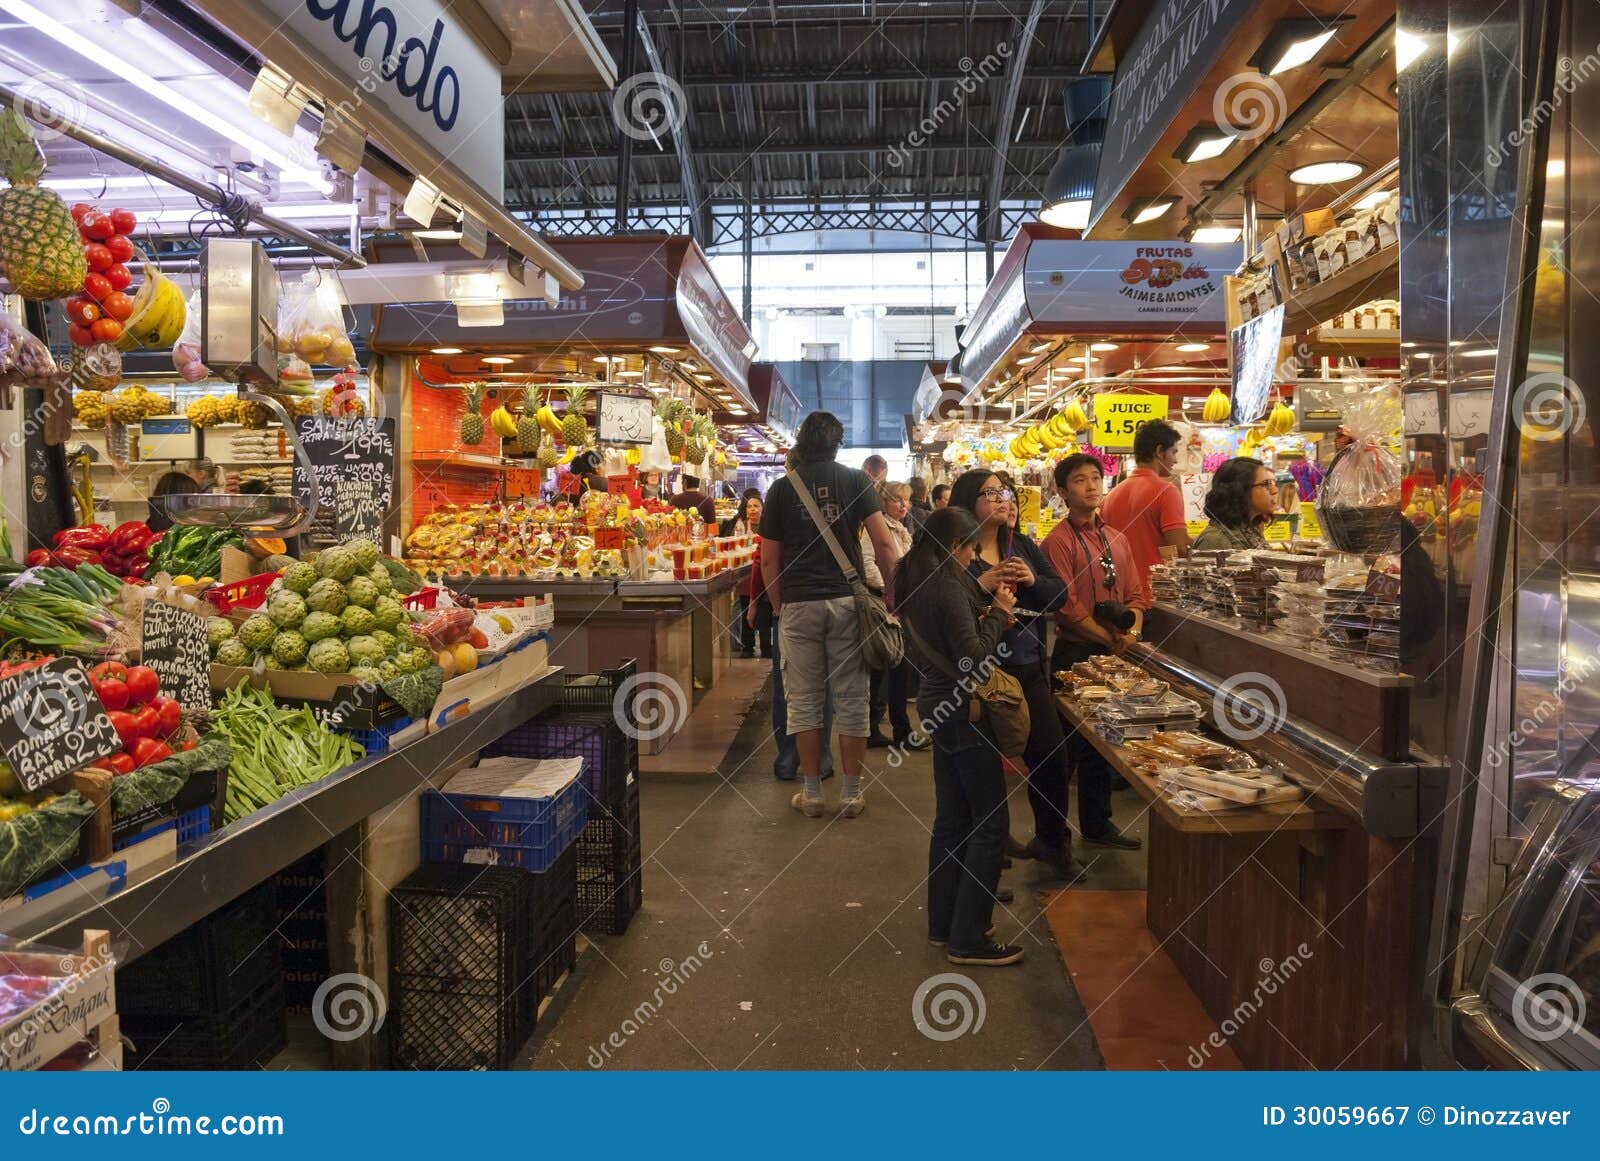 Market La Boqueria In Barcelona, Spain Editorial ...